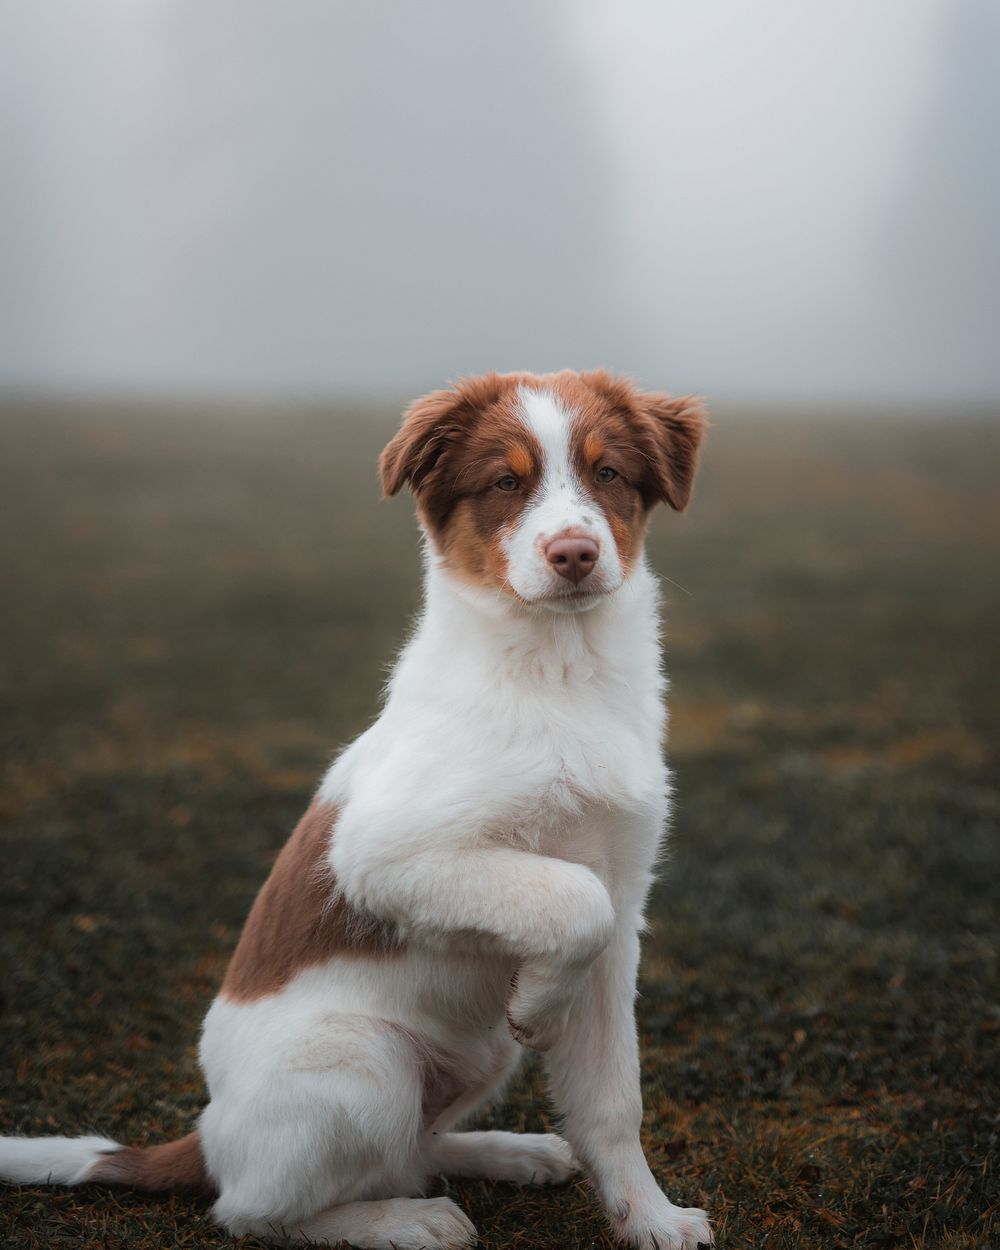 Dog at a misty field